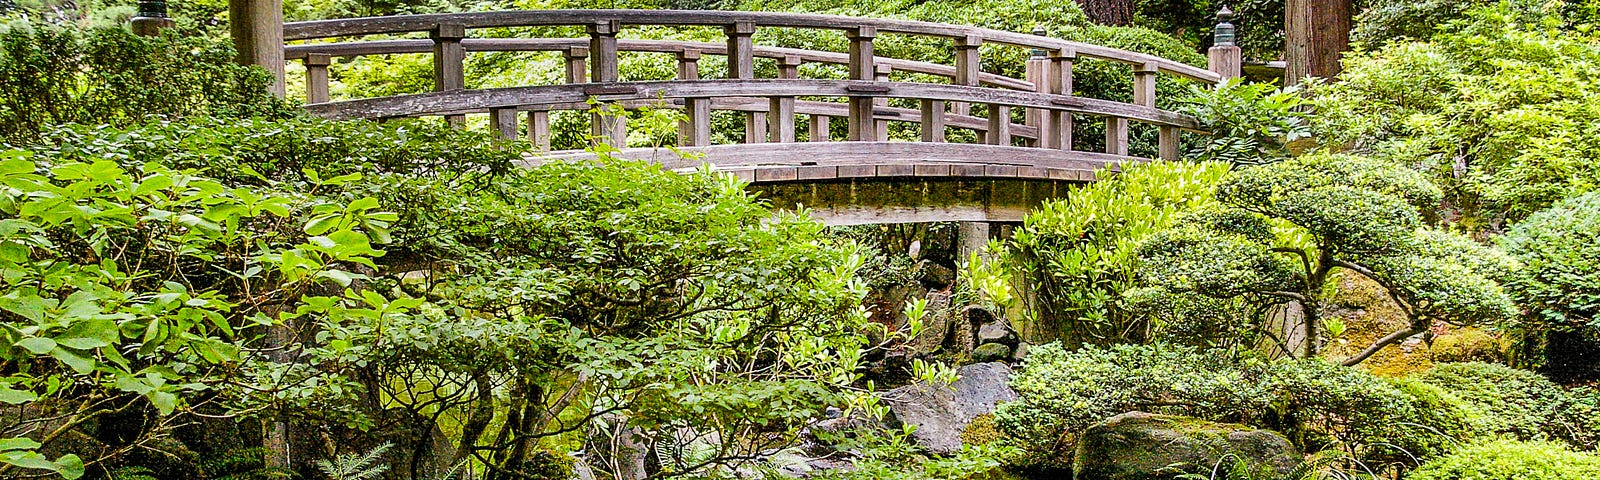 Bridge in Portland (Oregon) Japanese Garden.